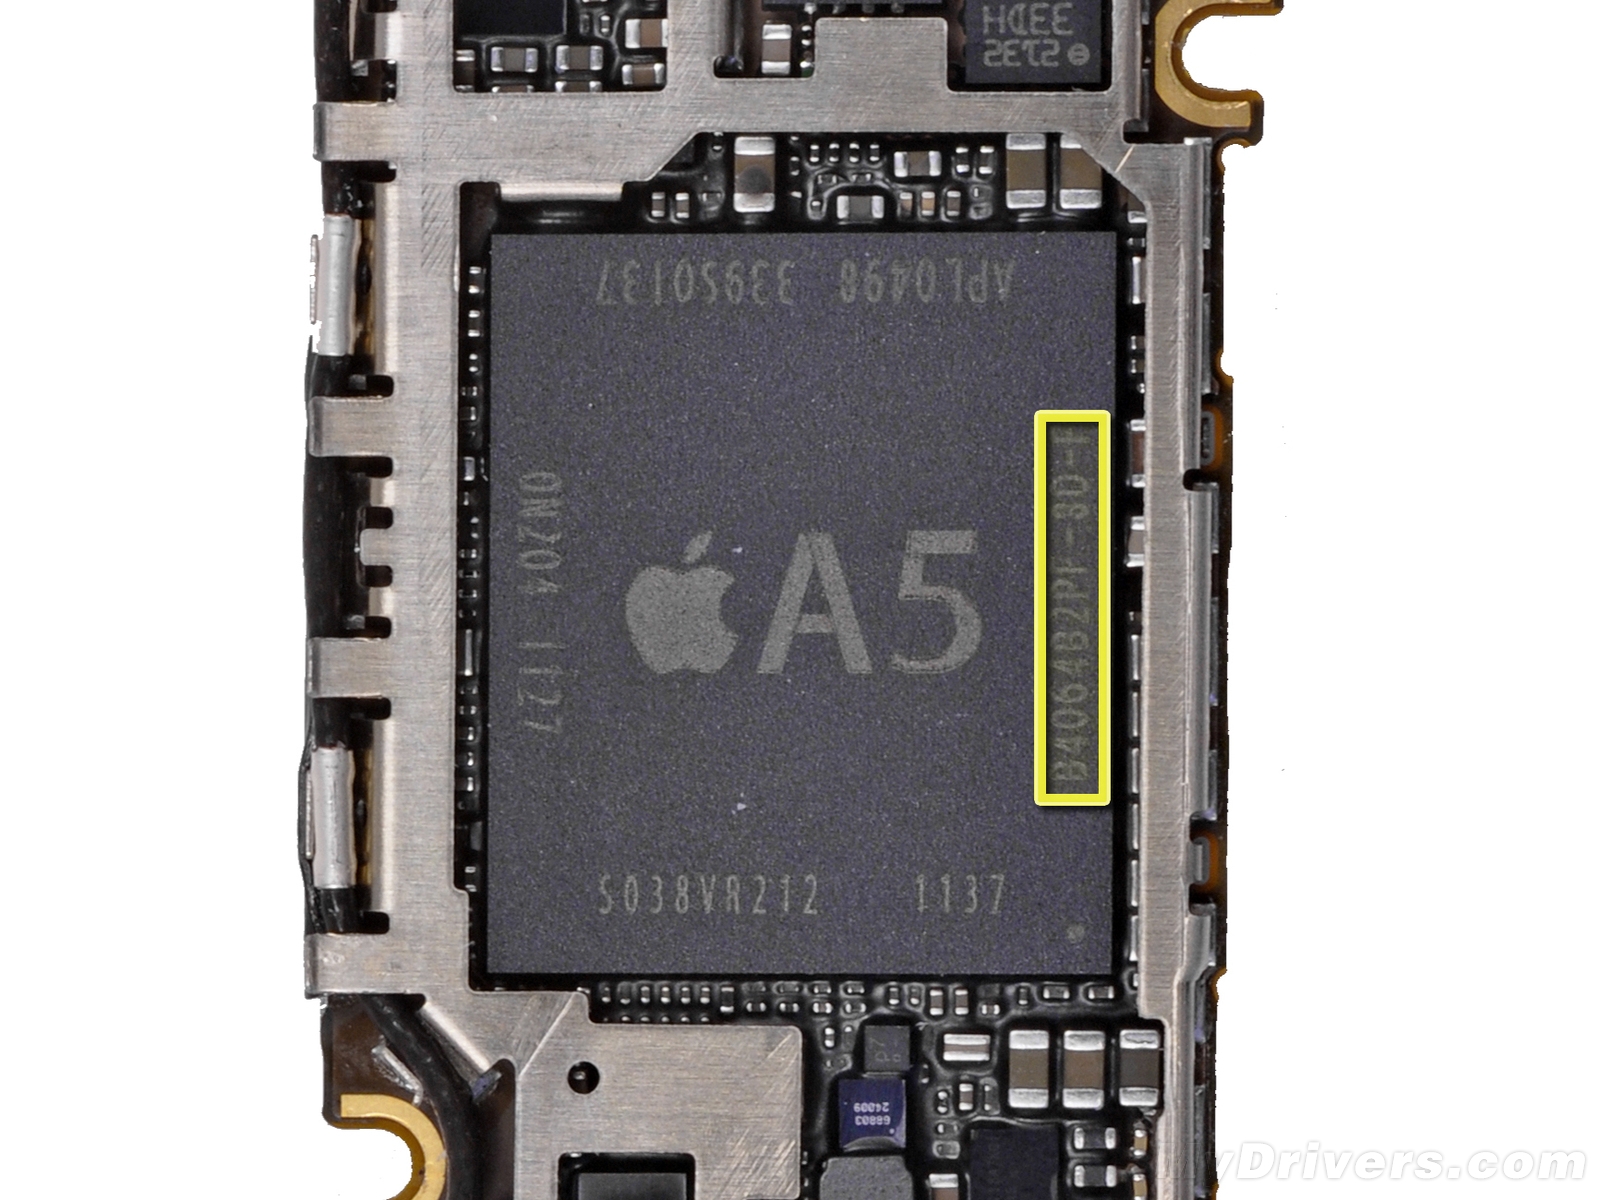 把一台用了九年的苹果手机做成标本，iPhone 4S全拆解